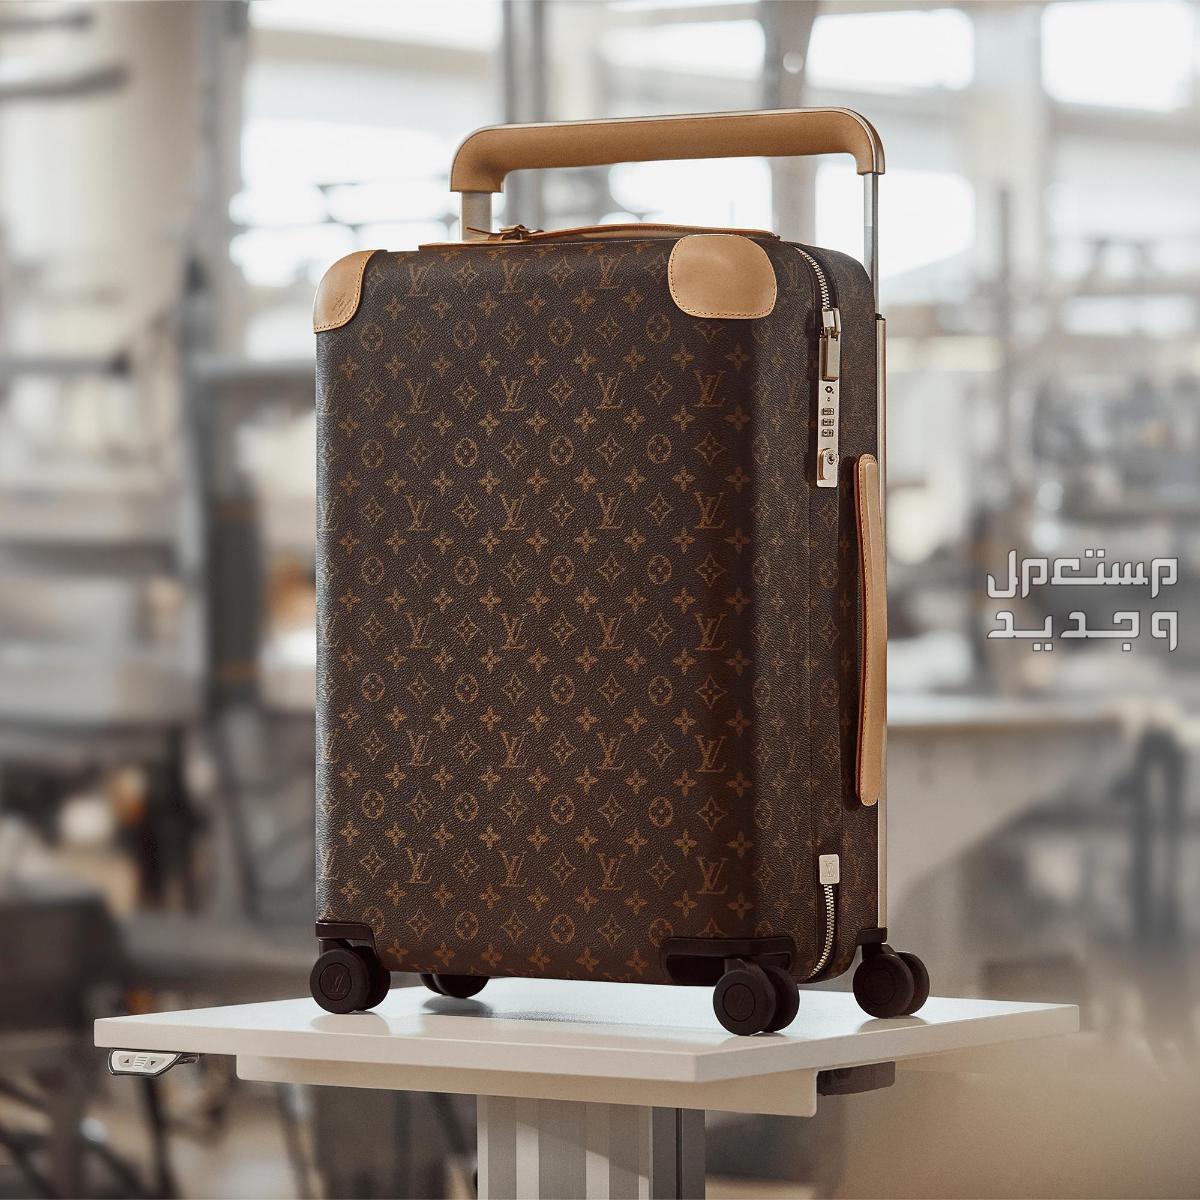 تعرف على أغلى حقيبة سفر في العالم في عمان تفاصيل حقيبة سفر Louis Vuitton Horizon 50